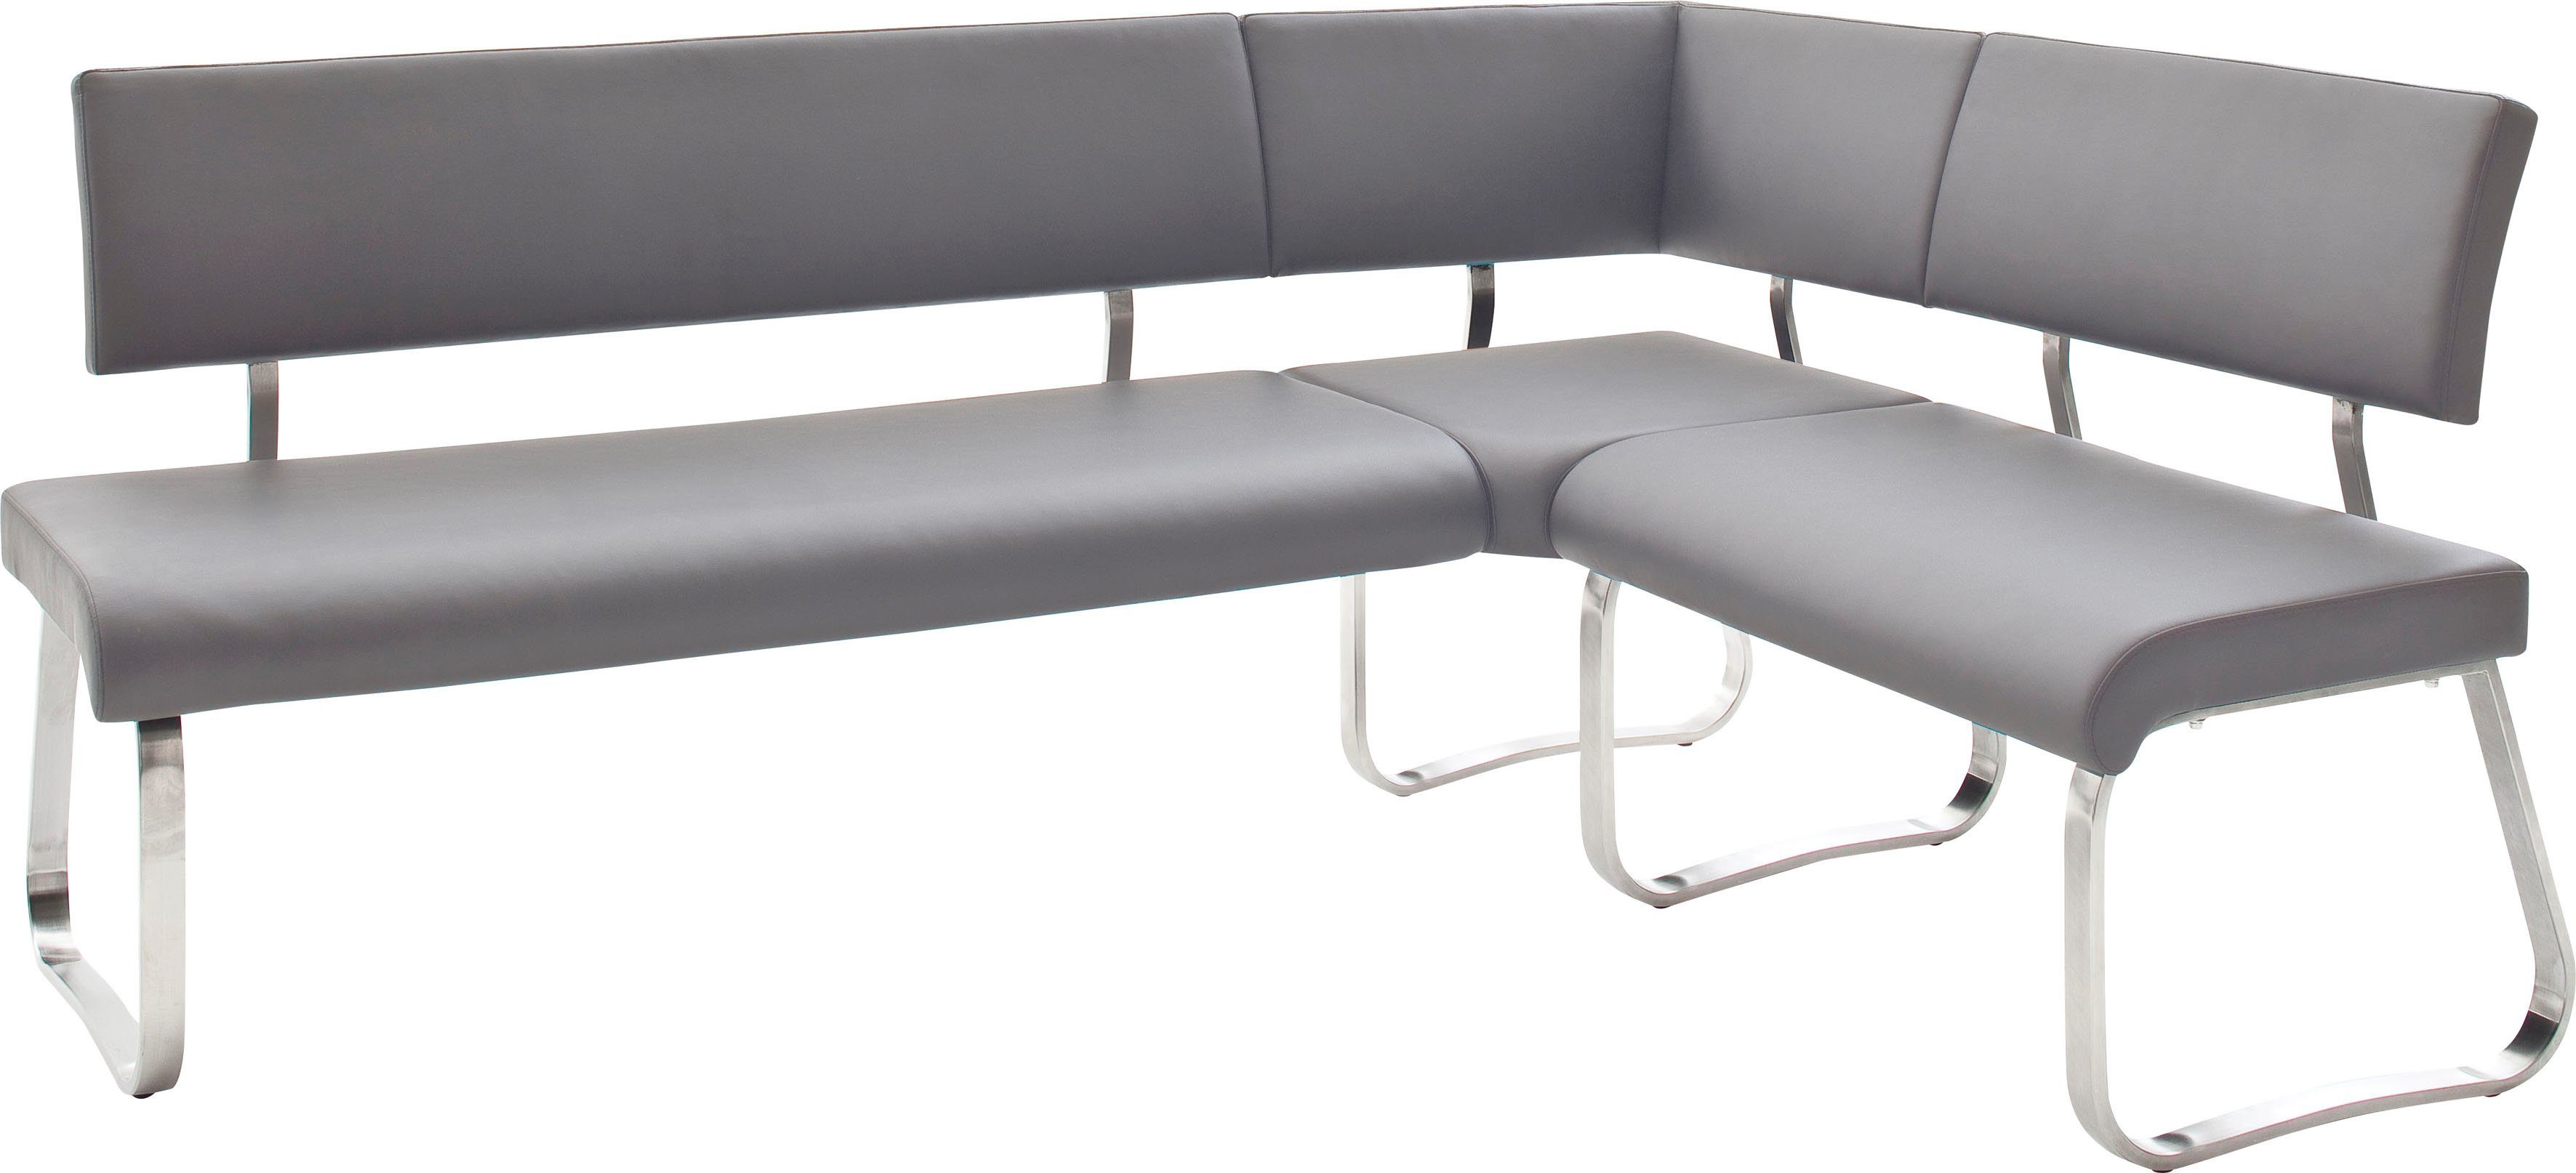 MCA furniture Hoekbank Arco Hoekbank vrij plaatsbaar, breedte 200 cm, belastbaar tot 500 kg